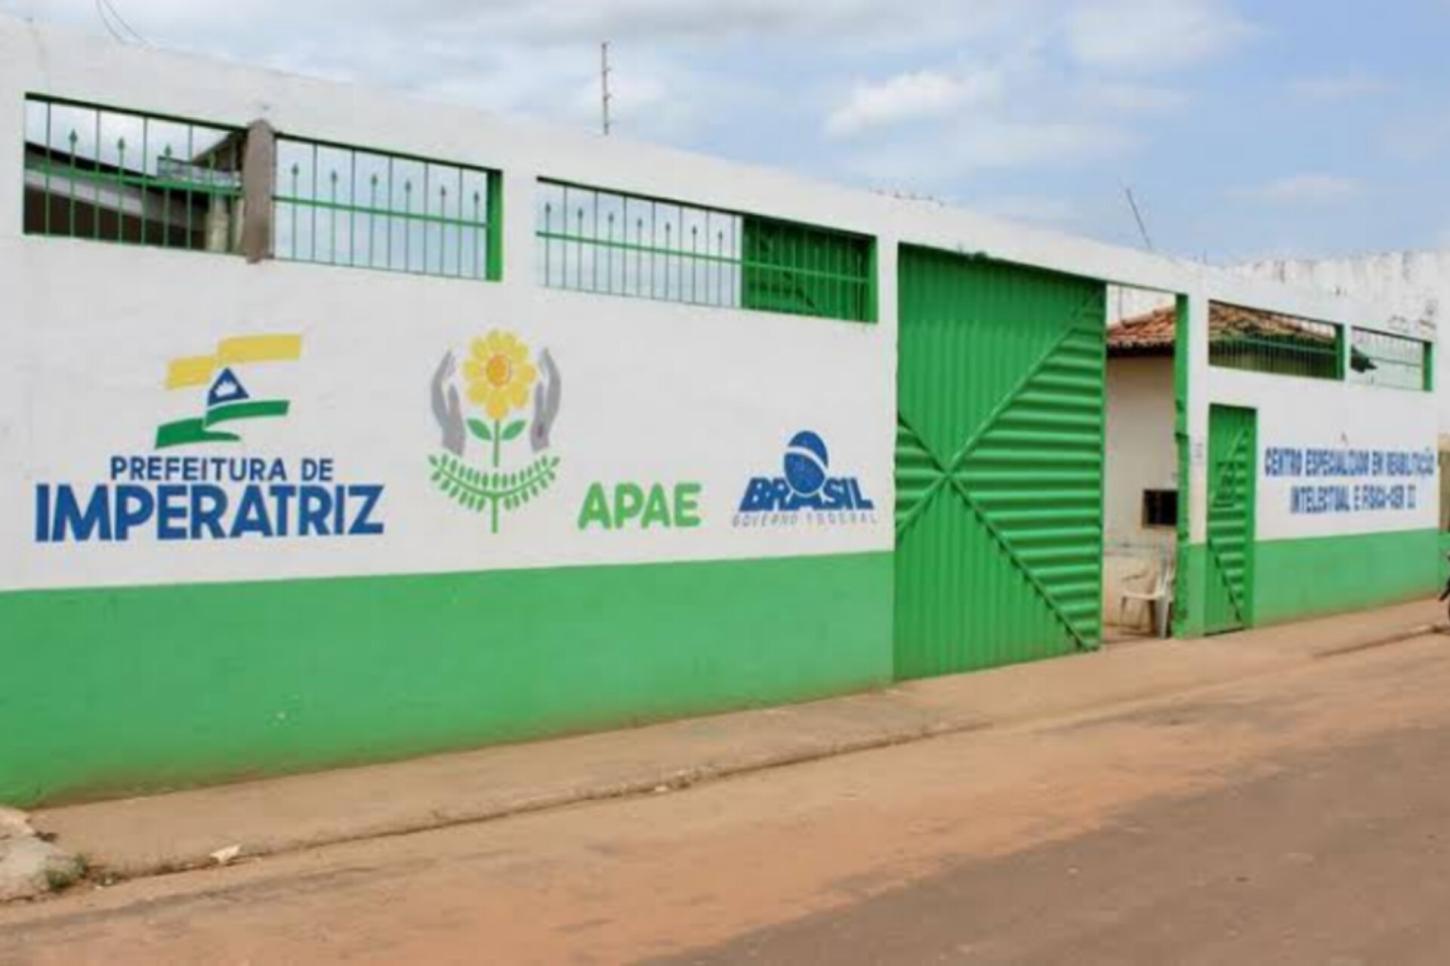 Prefeitura de Imperatriz anuncia rescisão contratual com a APAE e transfere o atendimento para o Centro de Saúde da Vila Nova